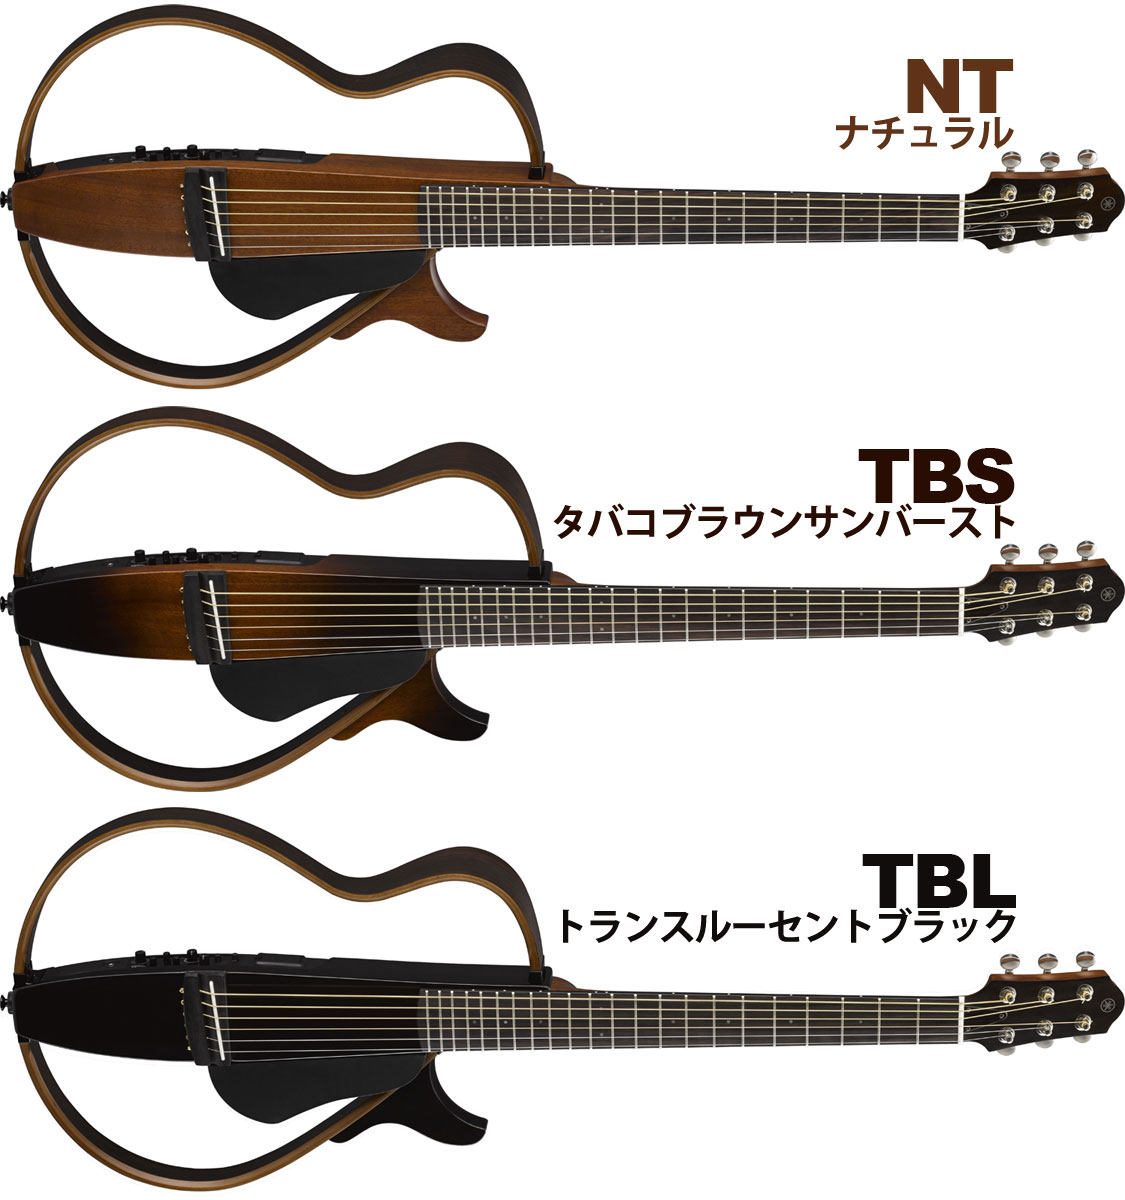 YAMAHA SLG200S TBS スチール弦仕様 アコースティックギター